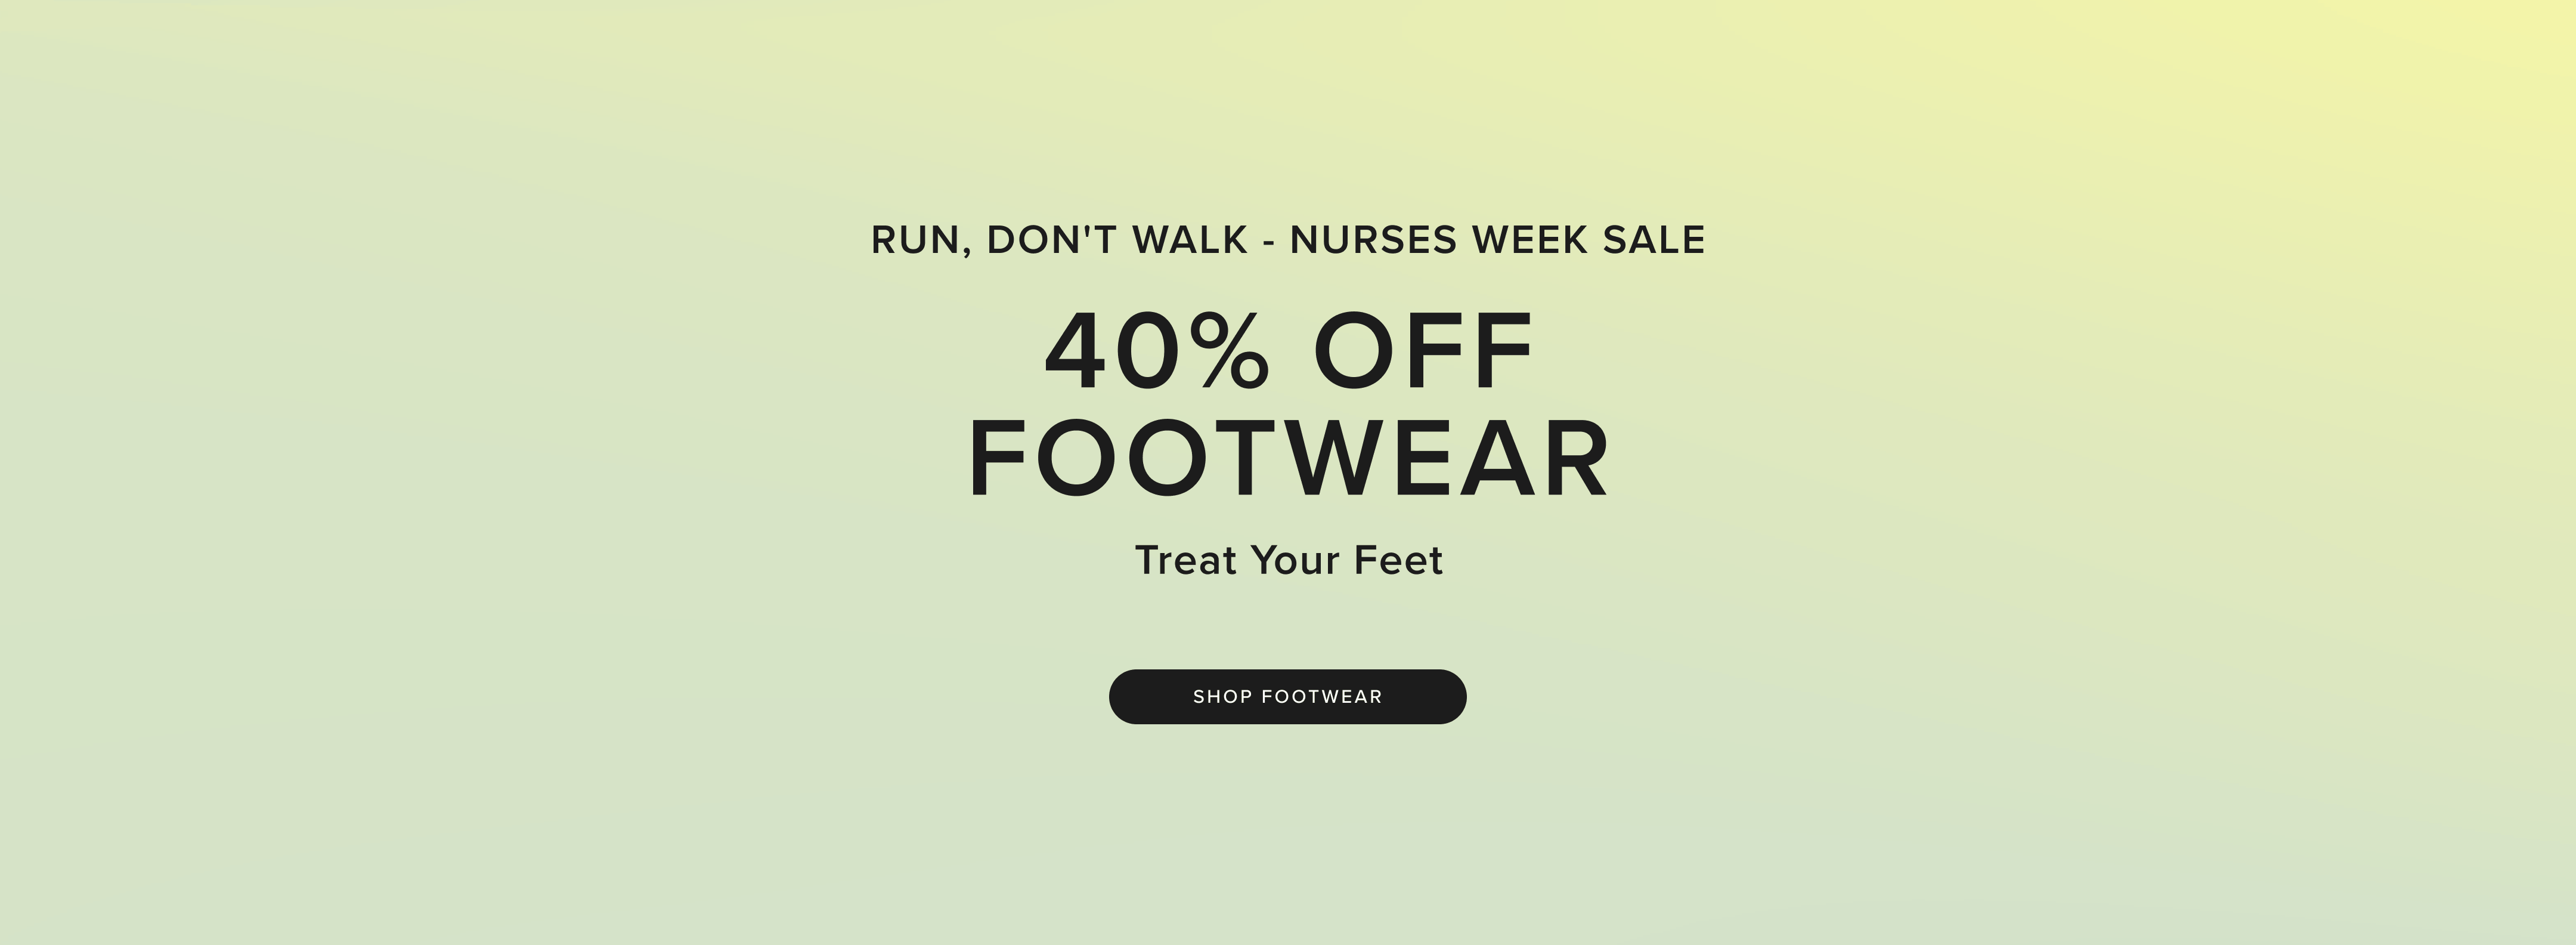 Run, don't Walk Nurses Week footwear sale